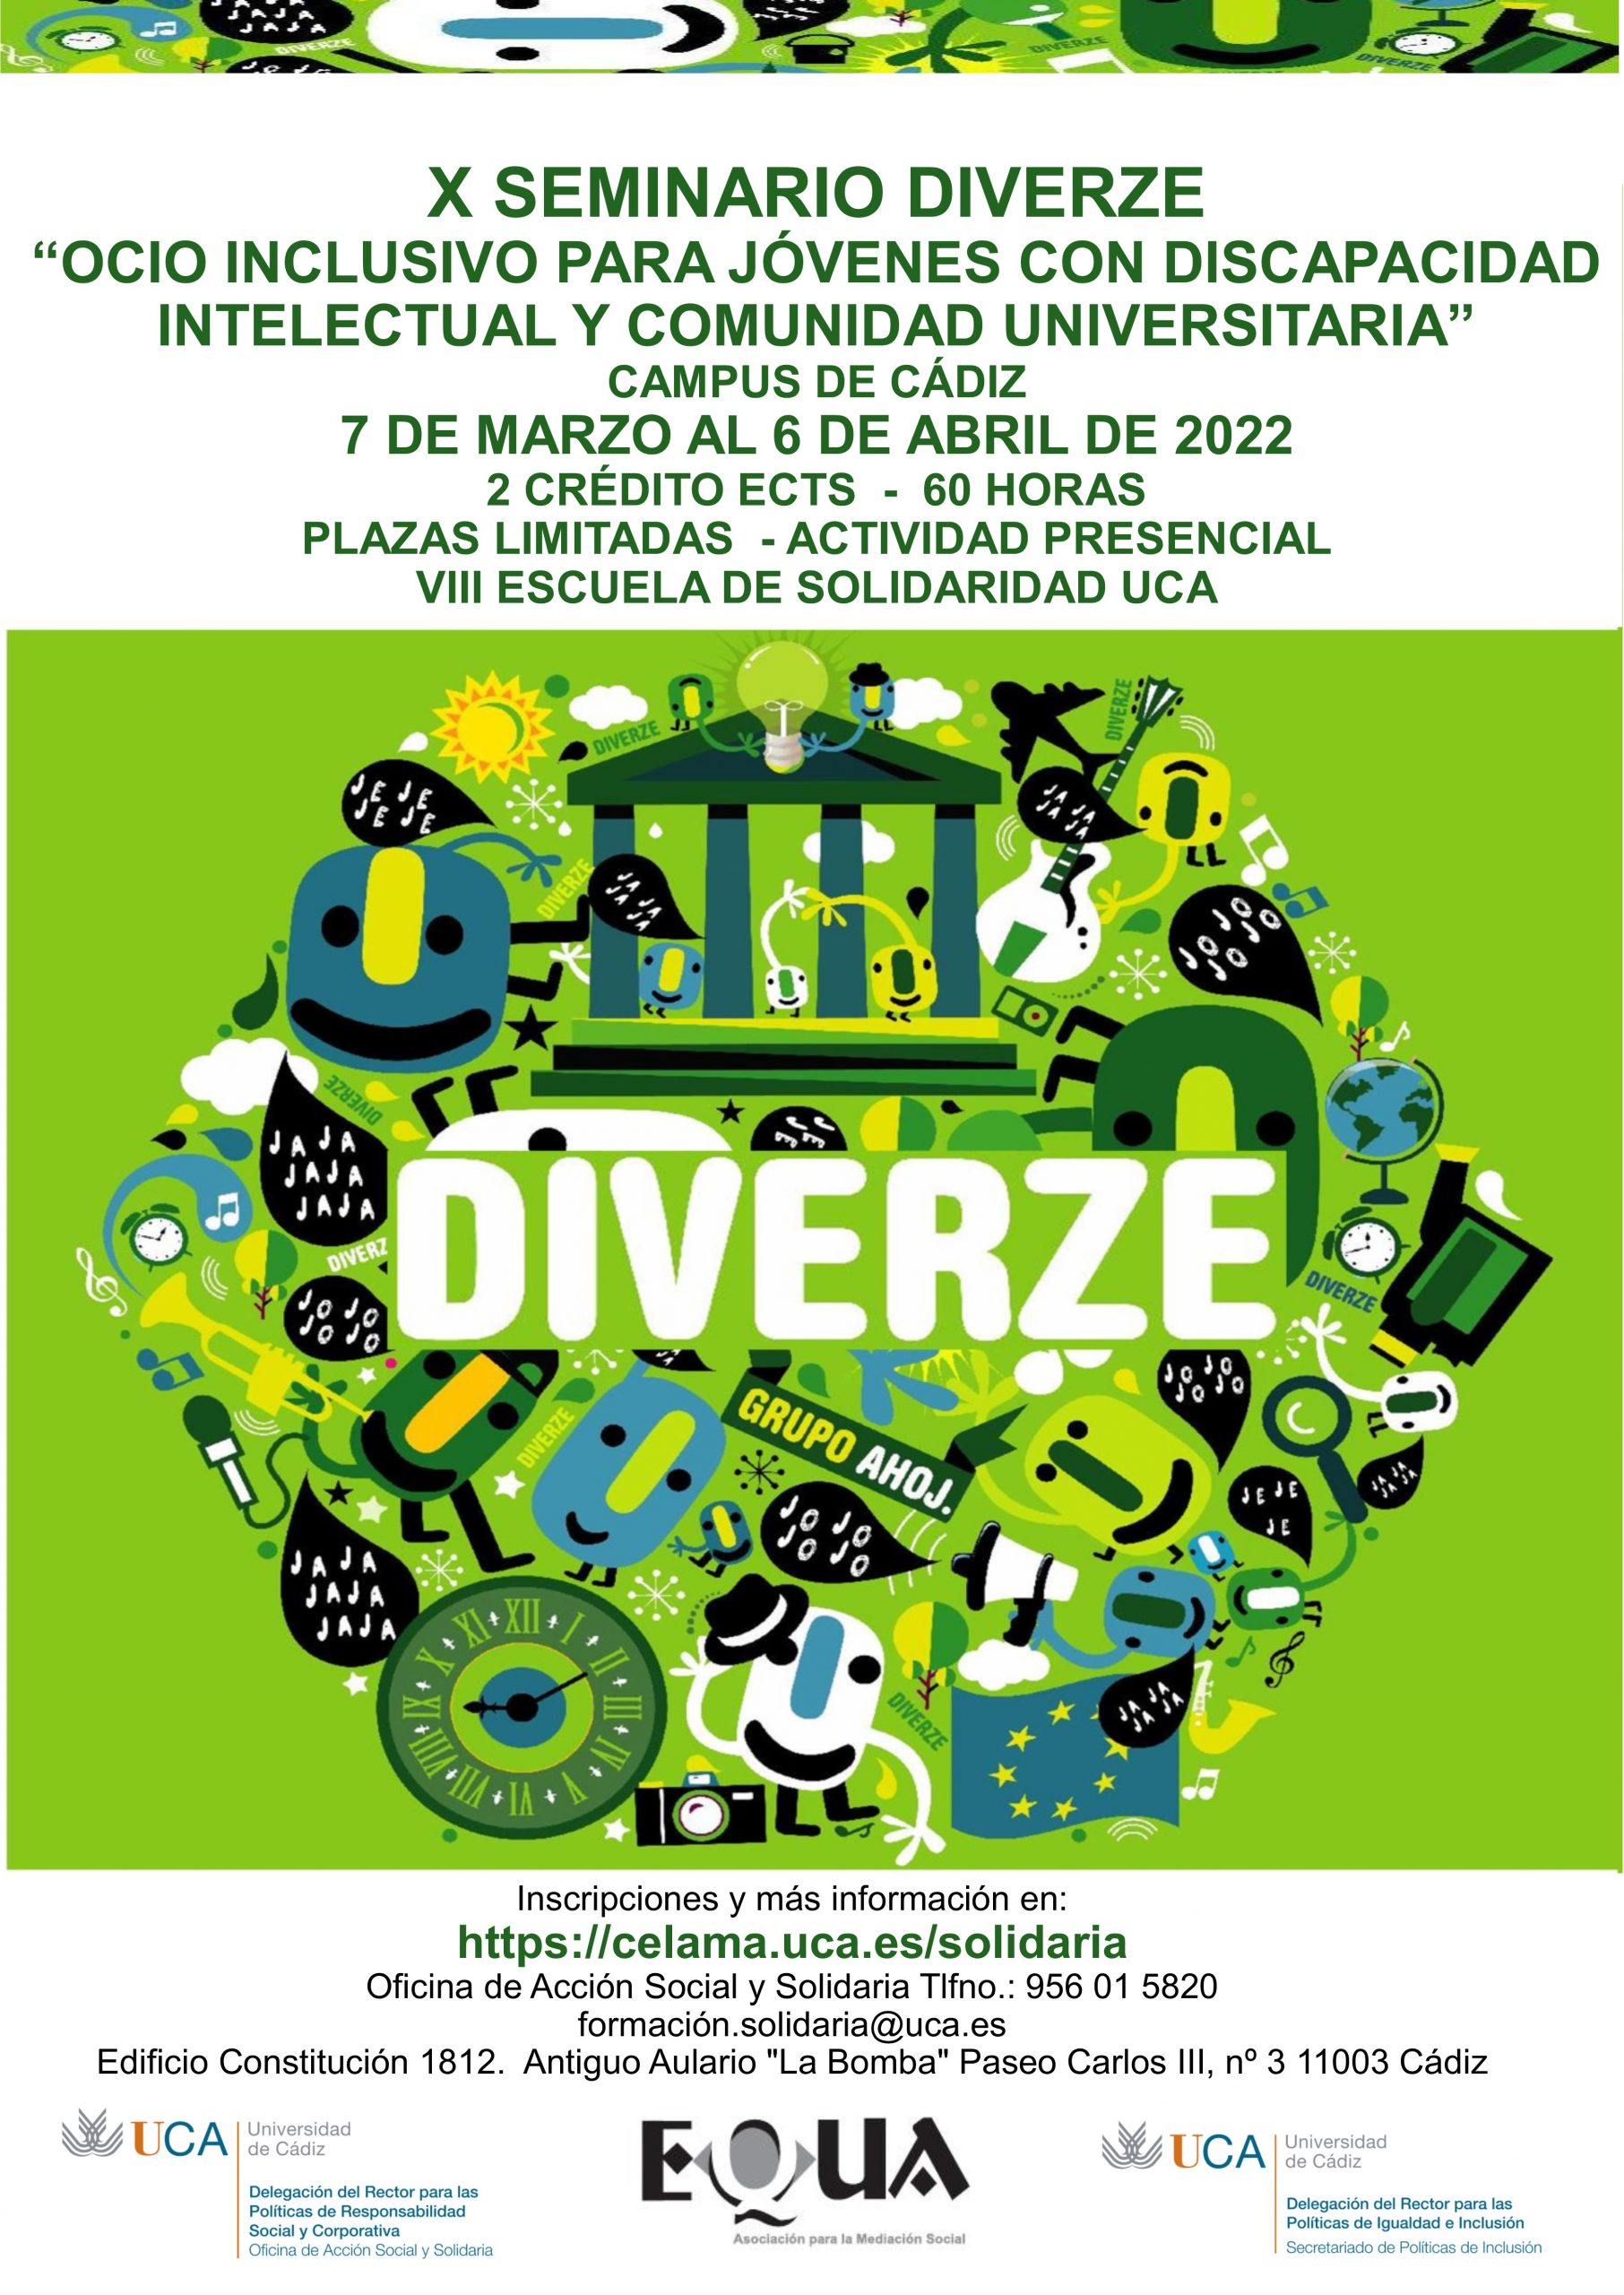 X Seminario Diverze: Ocio Inclusivo para jóvenes con discapacidad intelectual y comunidad universitaria. Del 7 de marzo al 6 de abril de 2022.